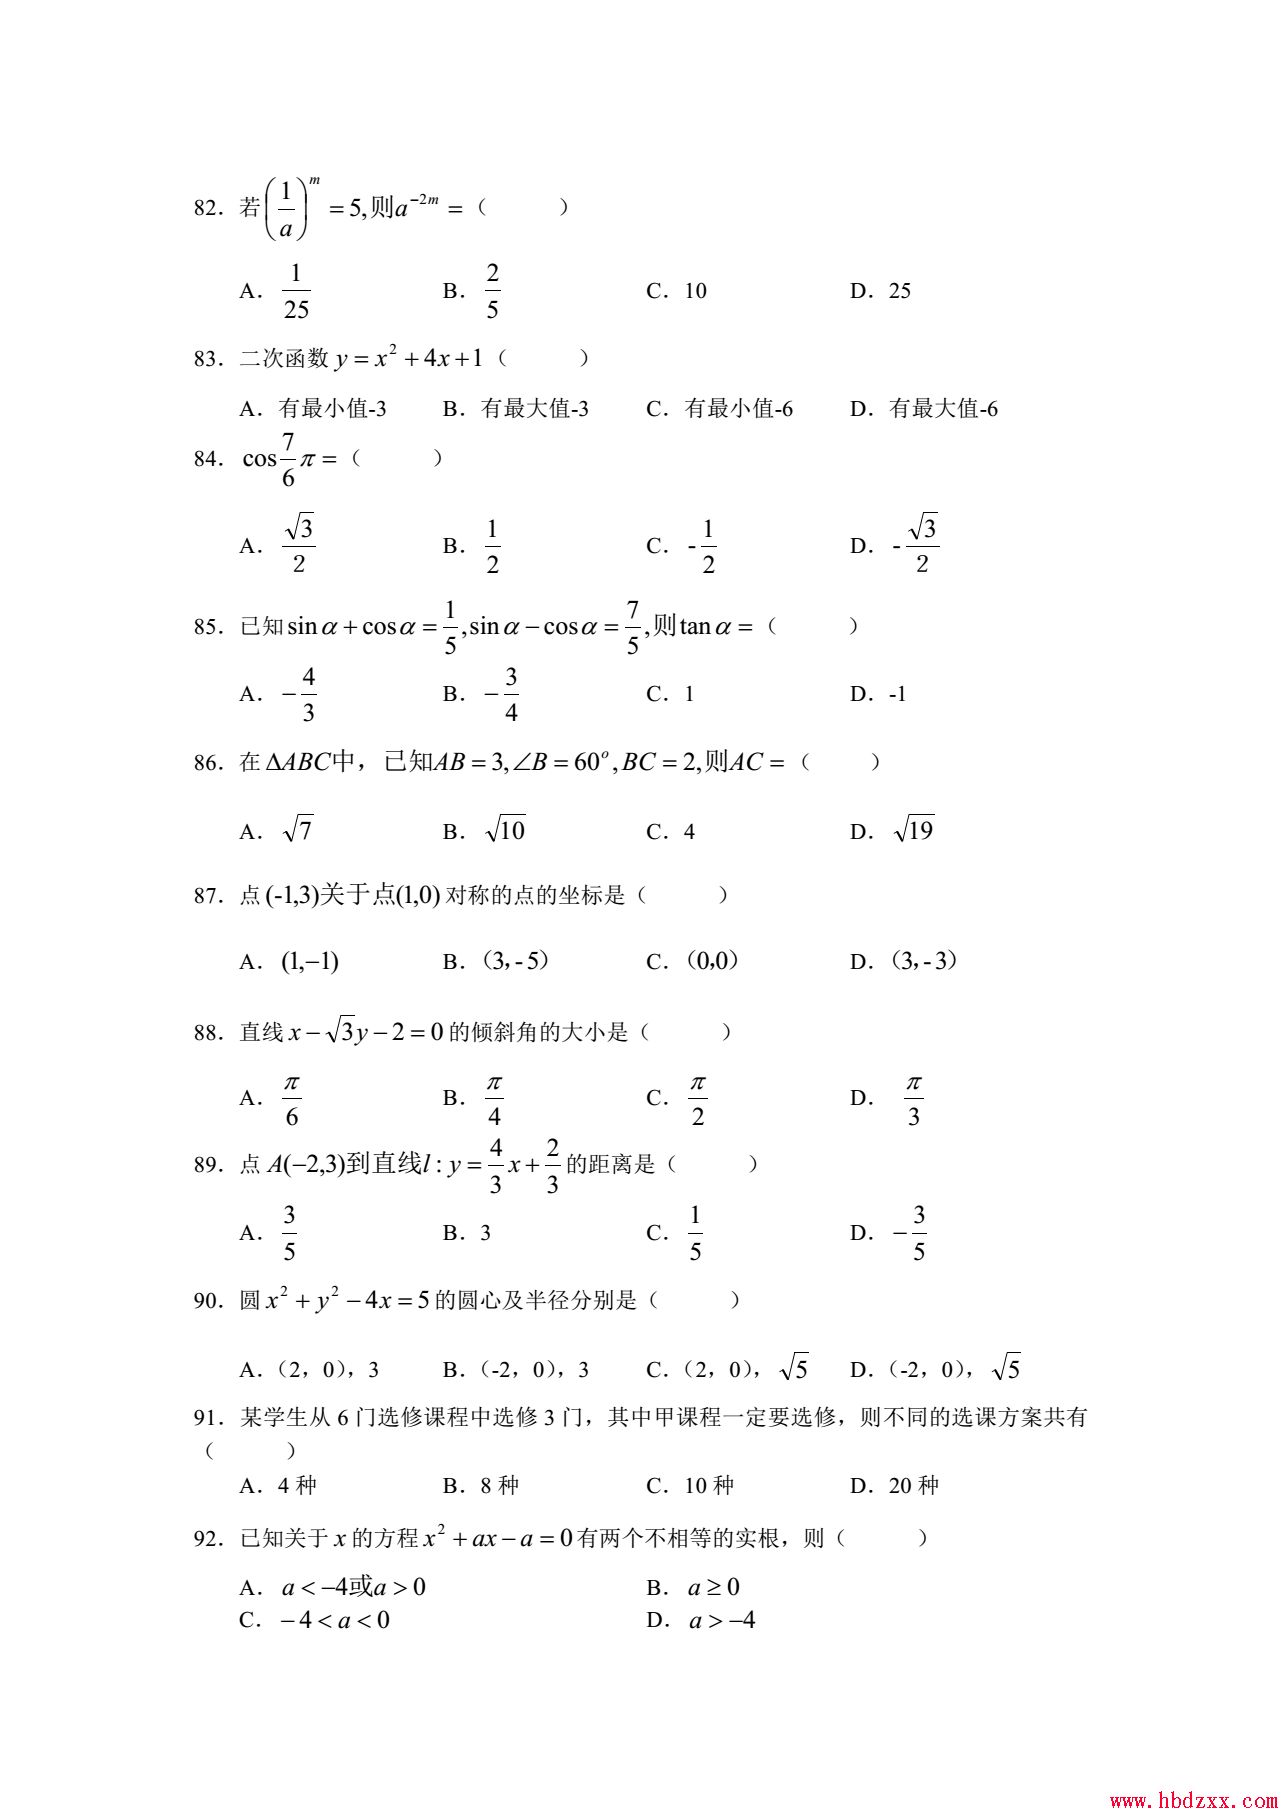 河北App职业技术学院2013年数学单招试题 图1